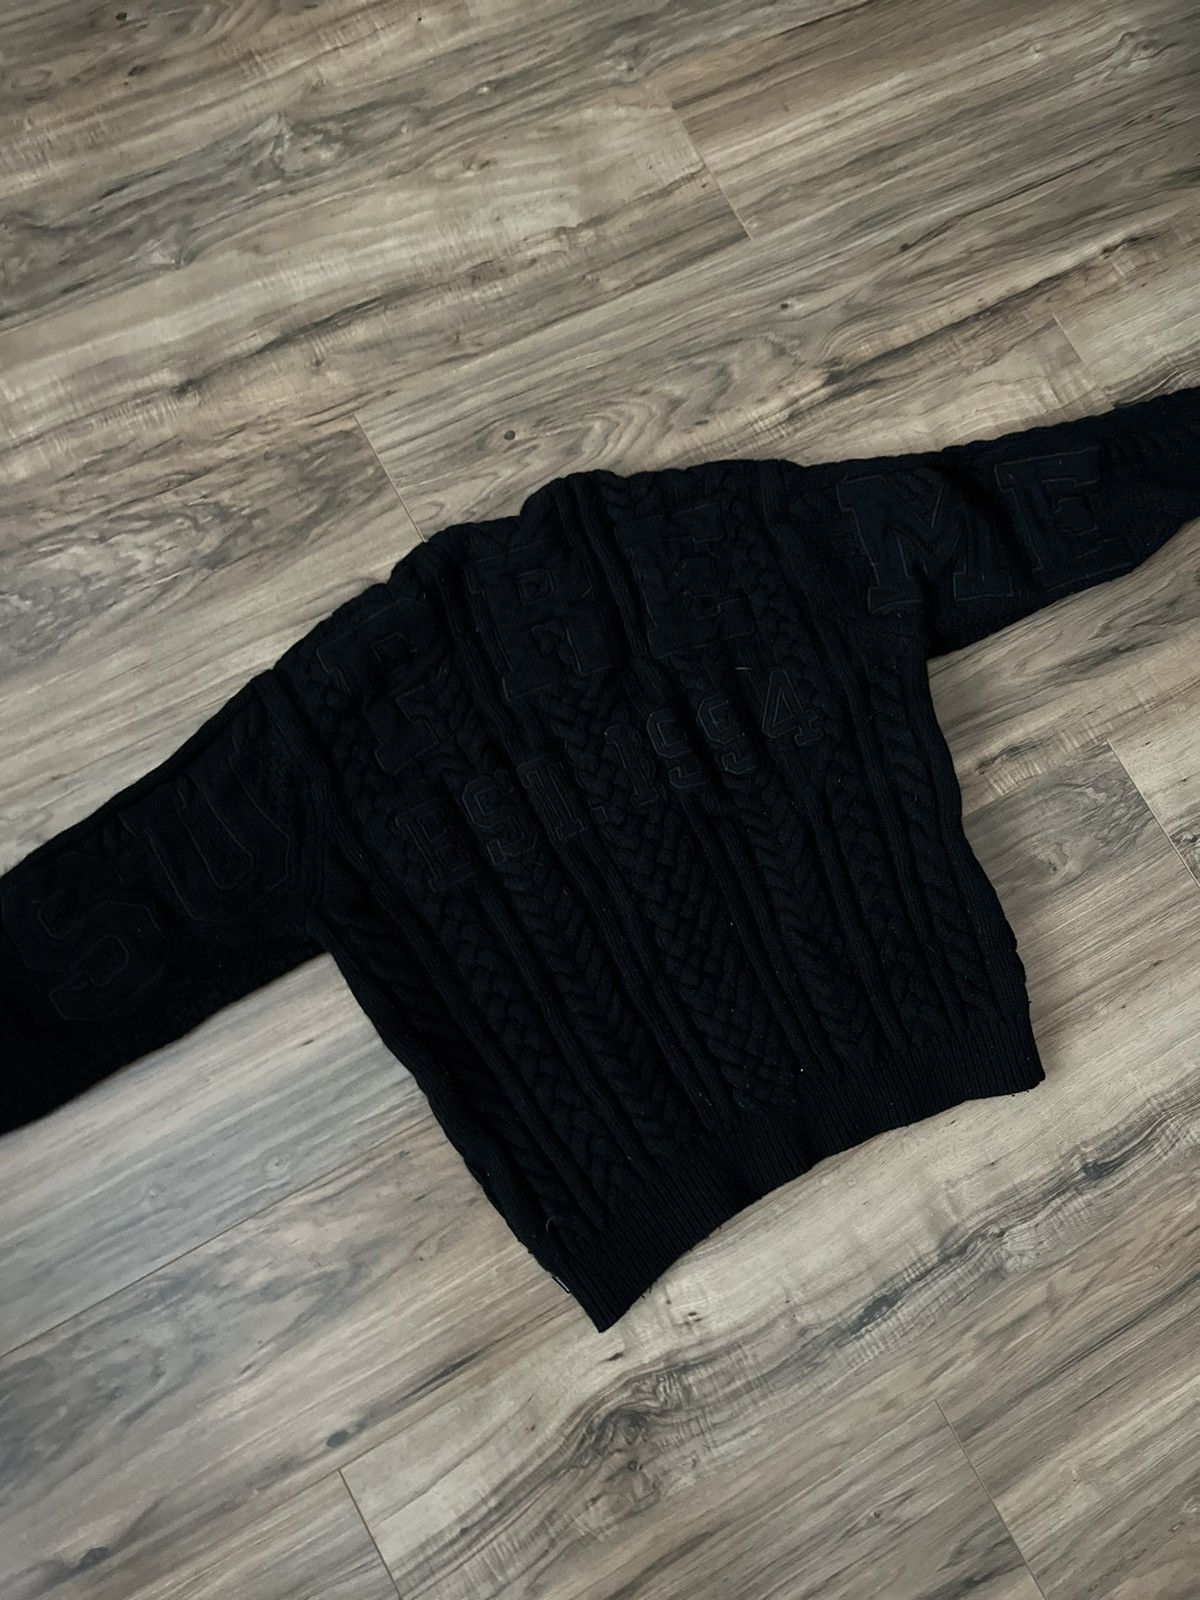 Supreme Supreme Appliqué Cable Knit Sweater | Grailed